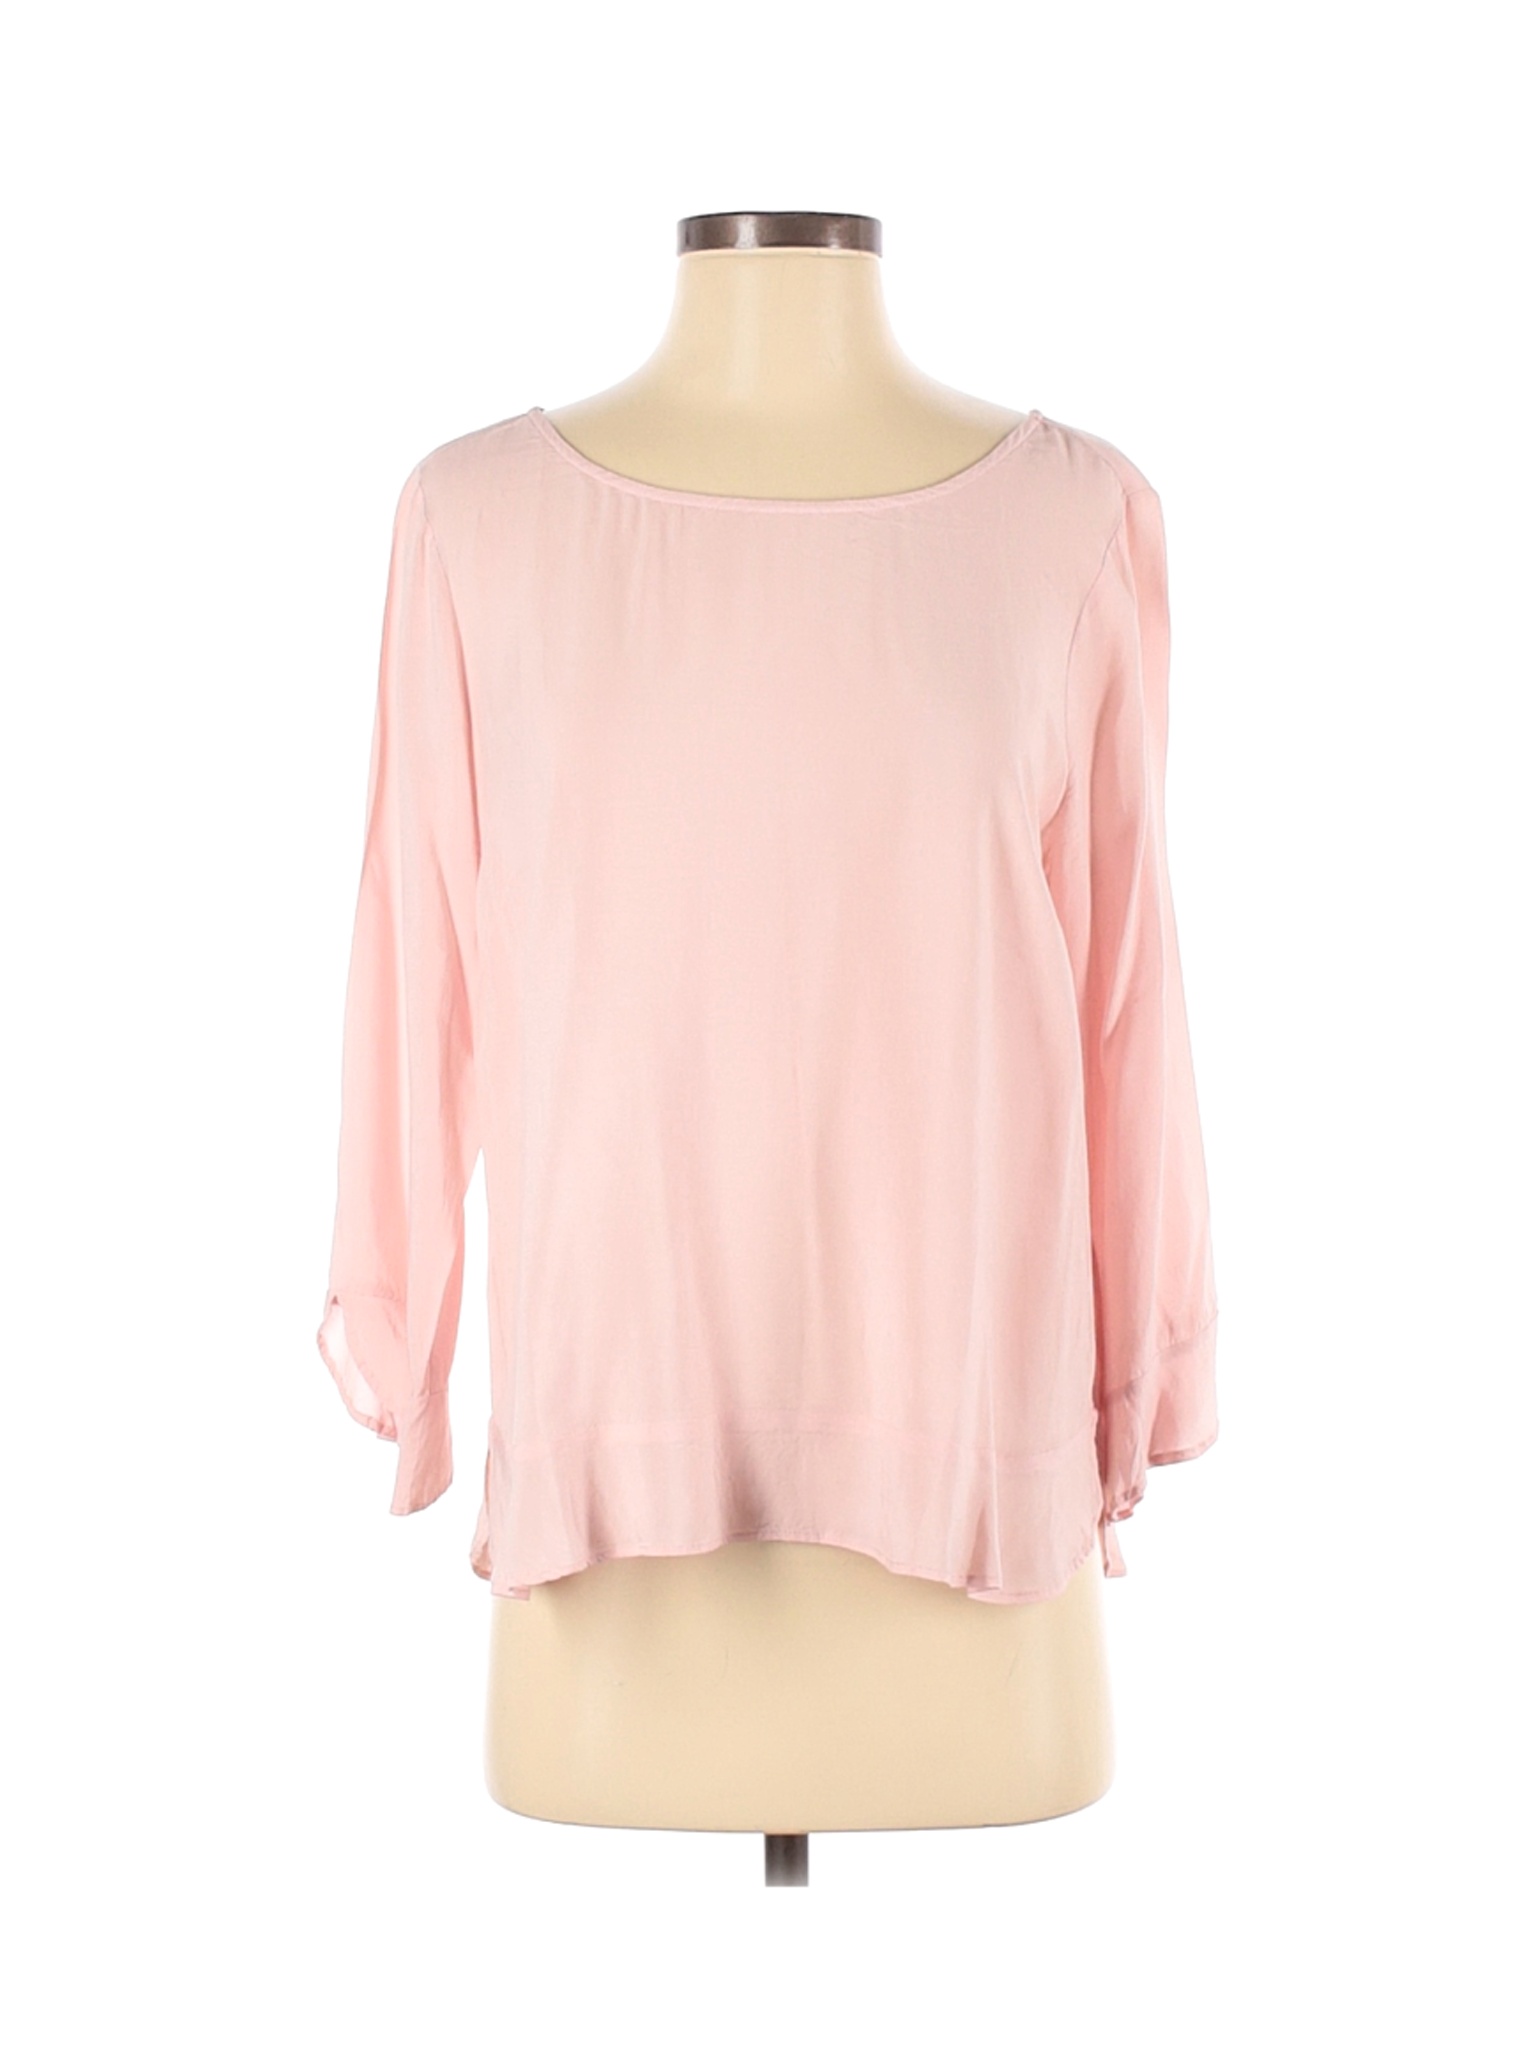 Velvet Women Pink Long Sleeve Blouse S | eBay